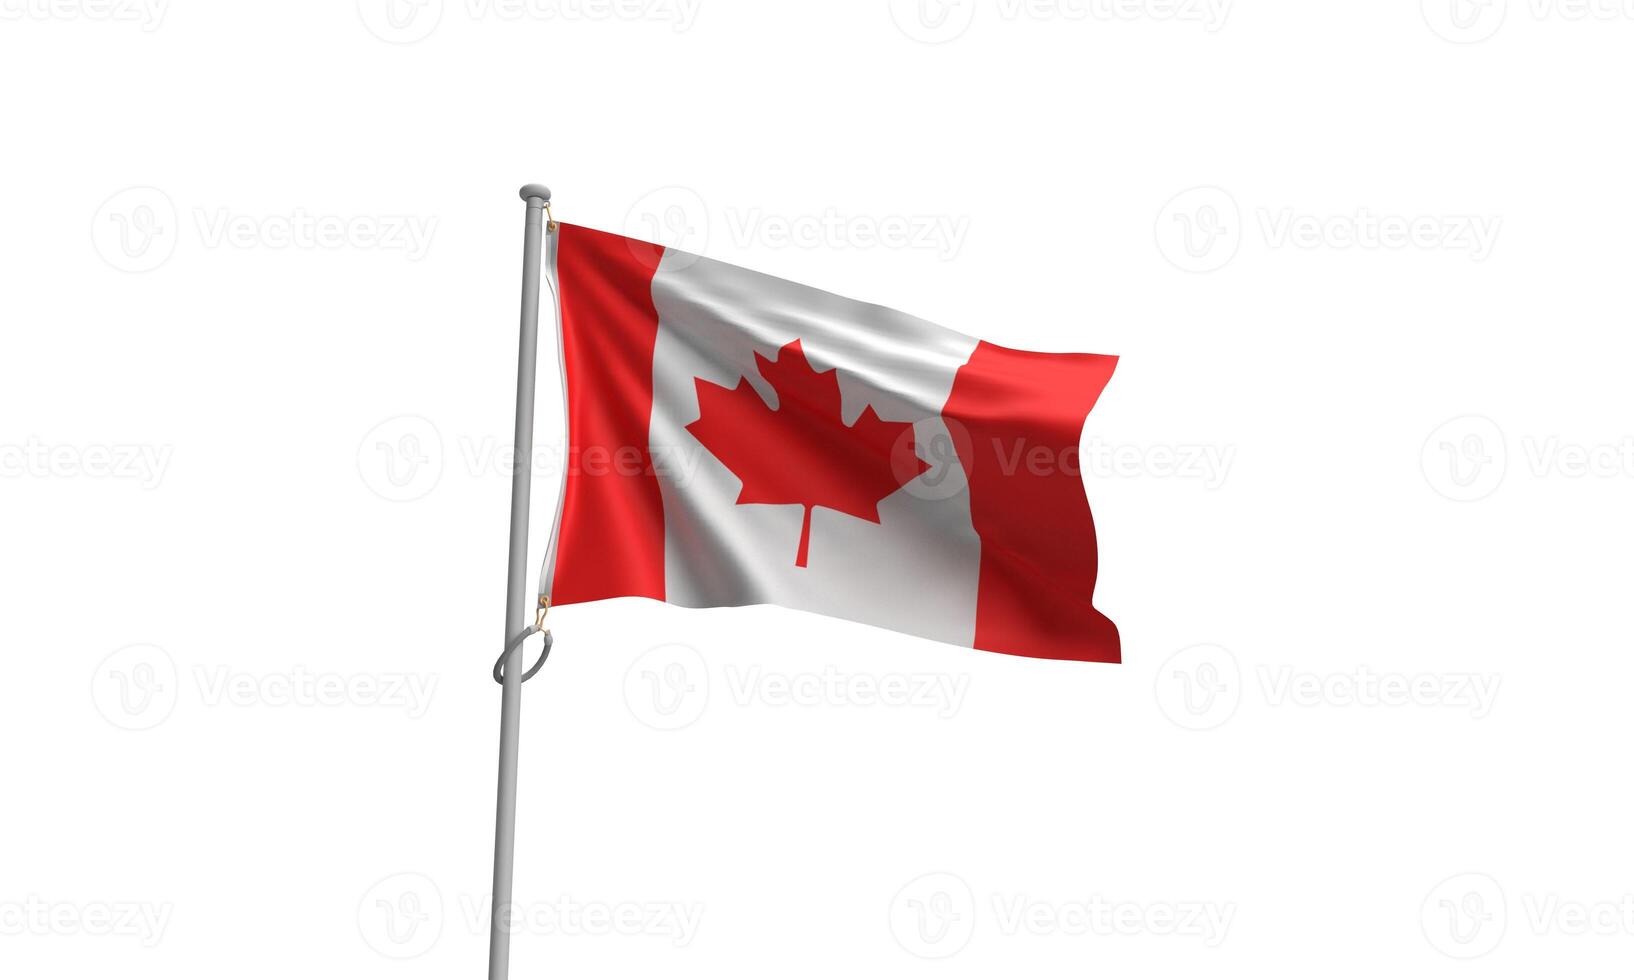 Canada drapeau arbre érable feuille rouge blanc Couleur fête patriotisme nationale canadien nationale indépendance Canada journée fierté été emblème natrional drapeau un événement histoire salutation culture Canada journée photo